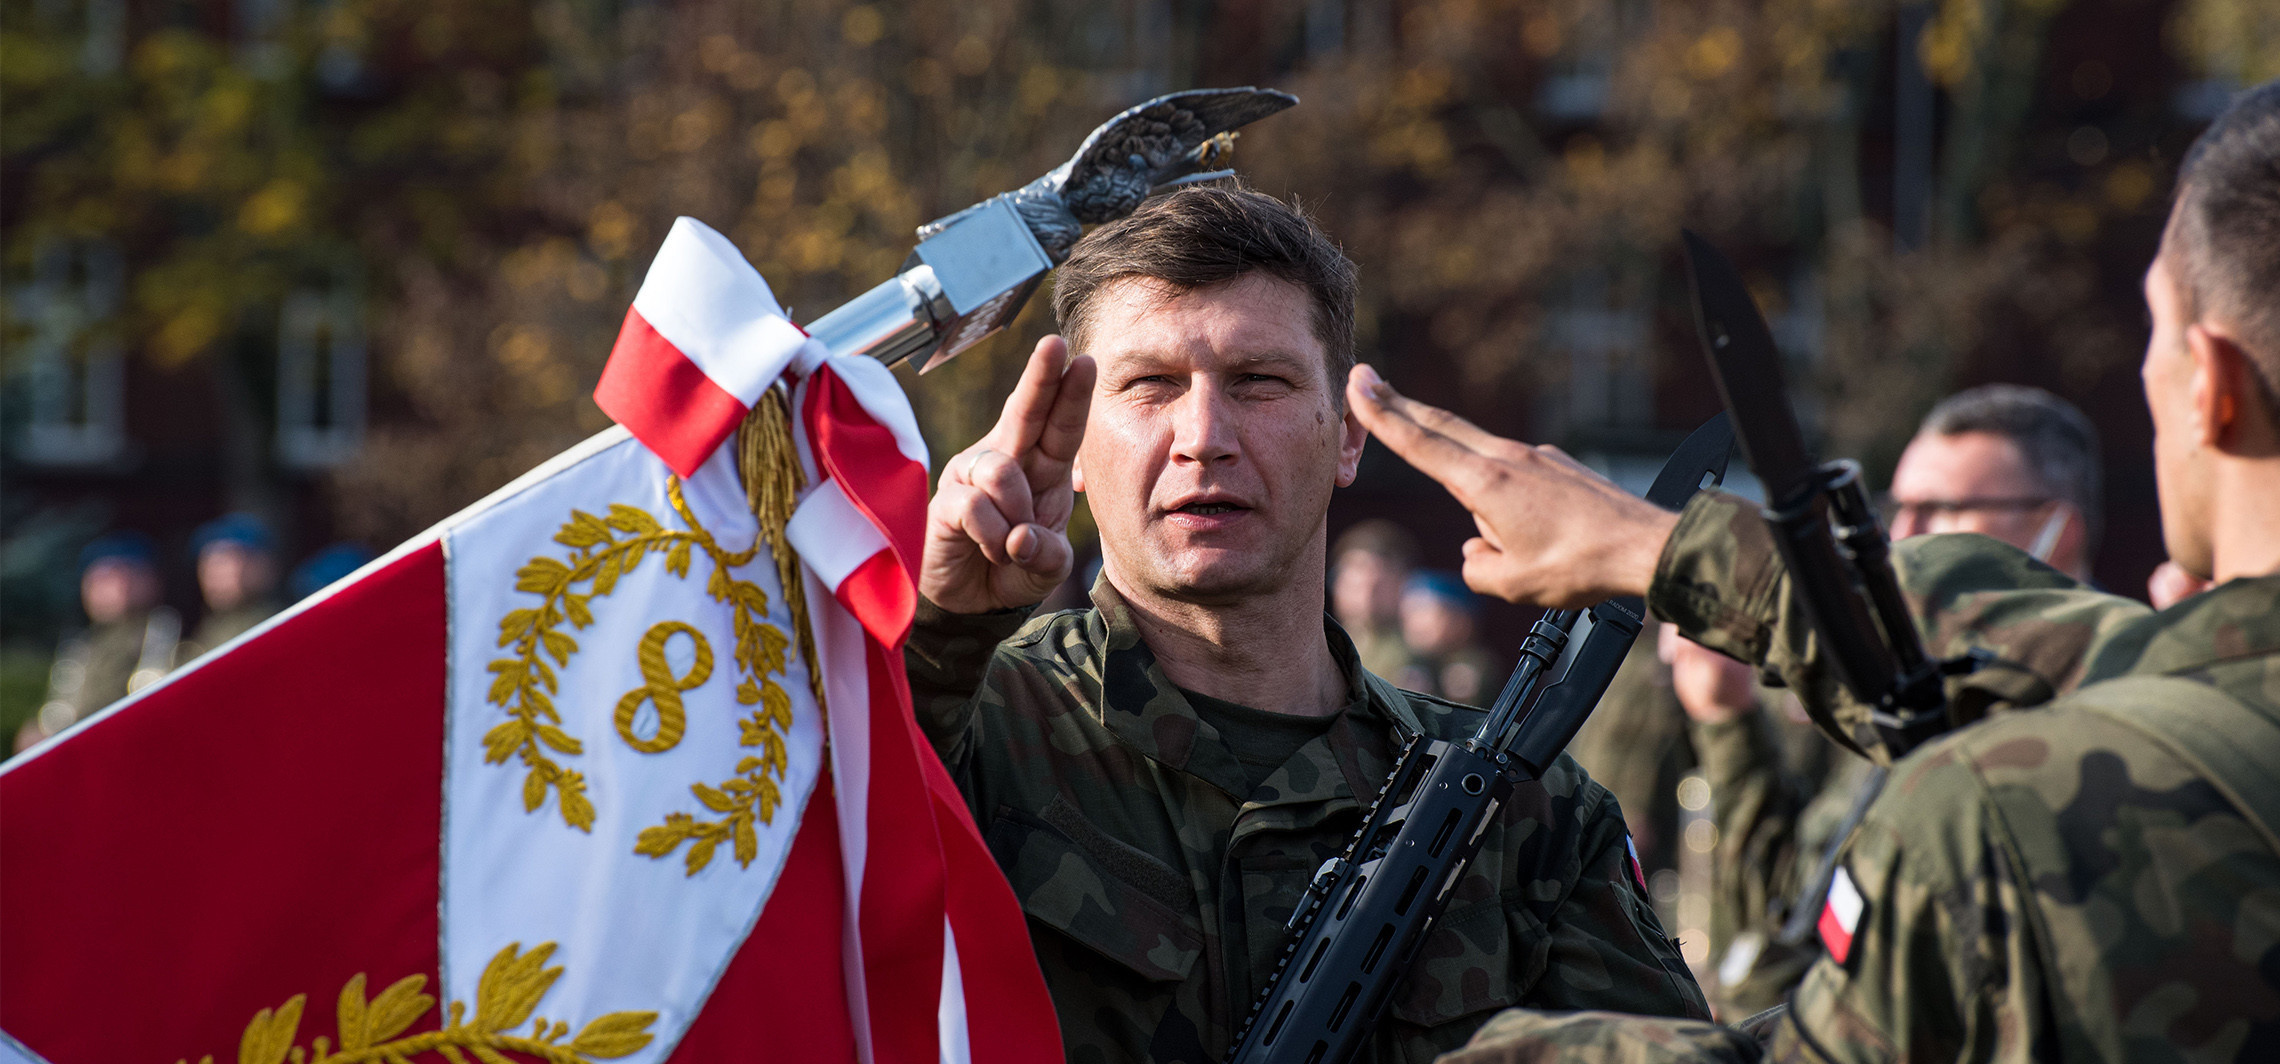 Inowrocław - Żołnierze złożyli w Inowrocławiu przysięgę. Towarzyszyli im bliscy